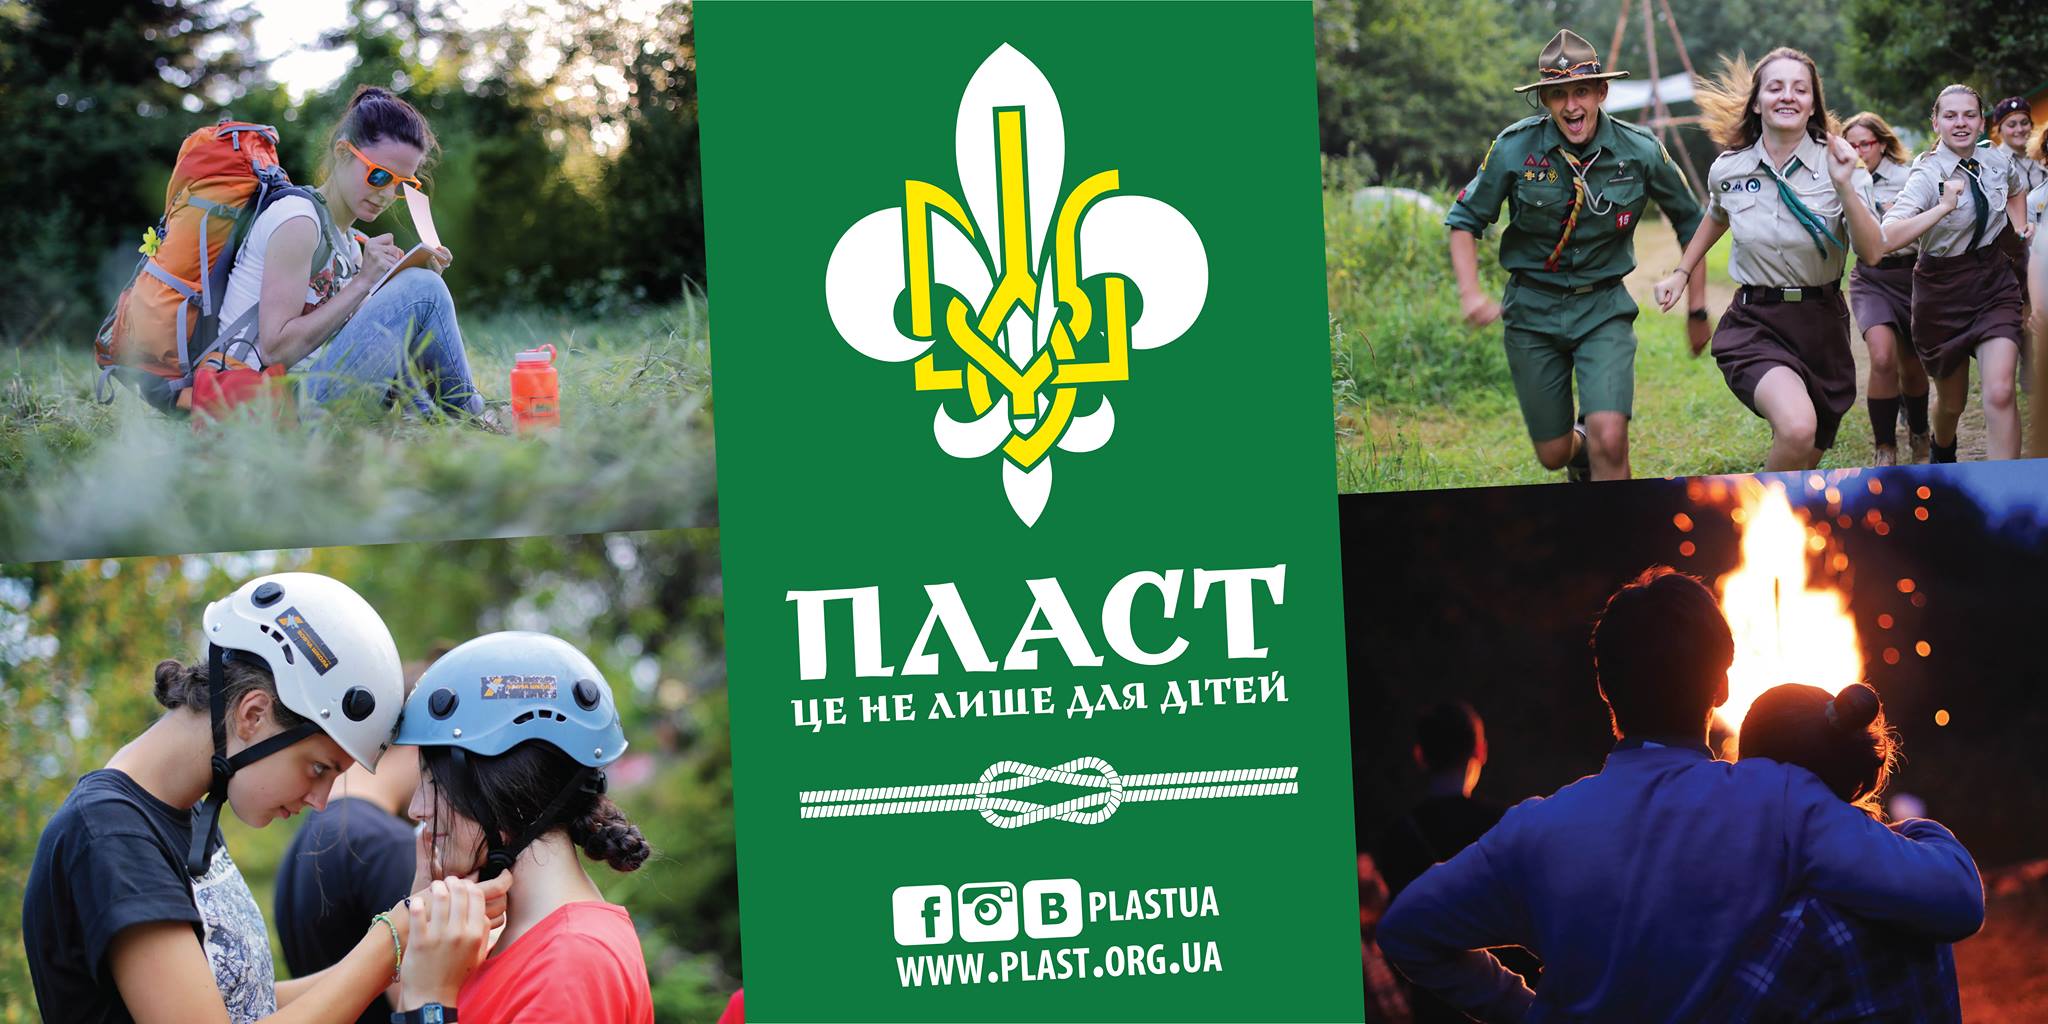 У Житомирі відбудеться дводенний семінар про найбільшу молодіжну організацію країни Пласт